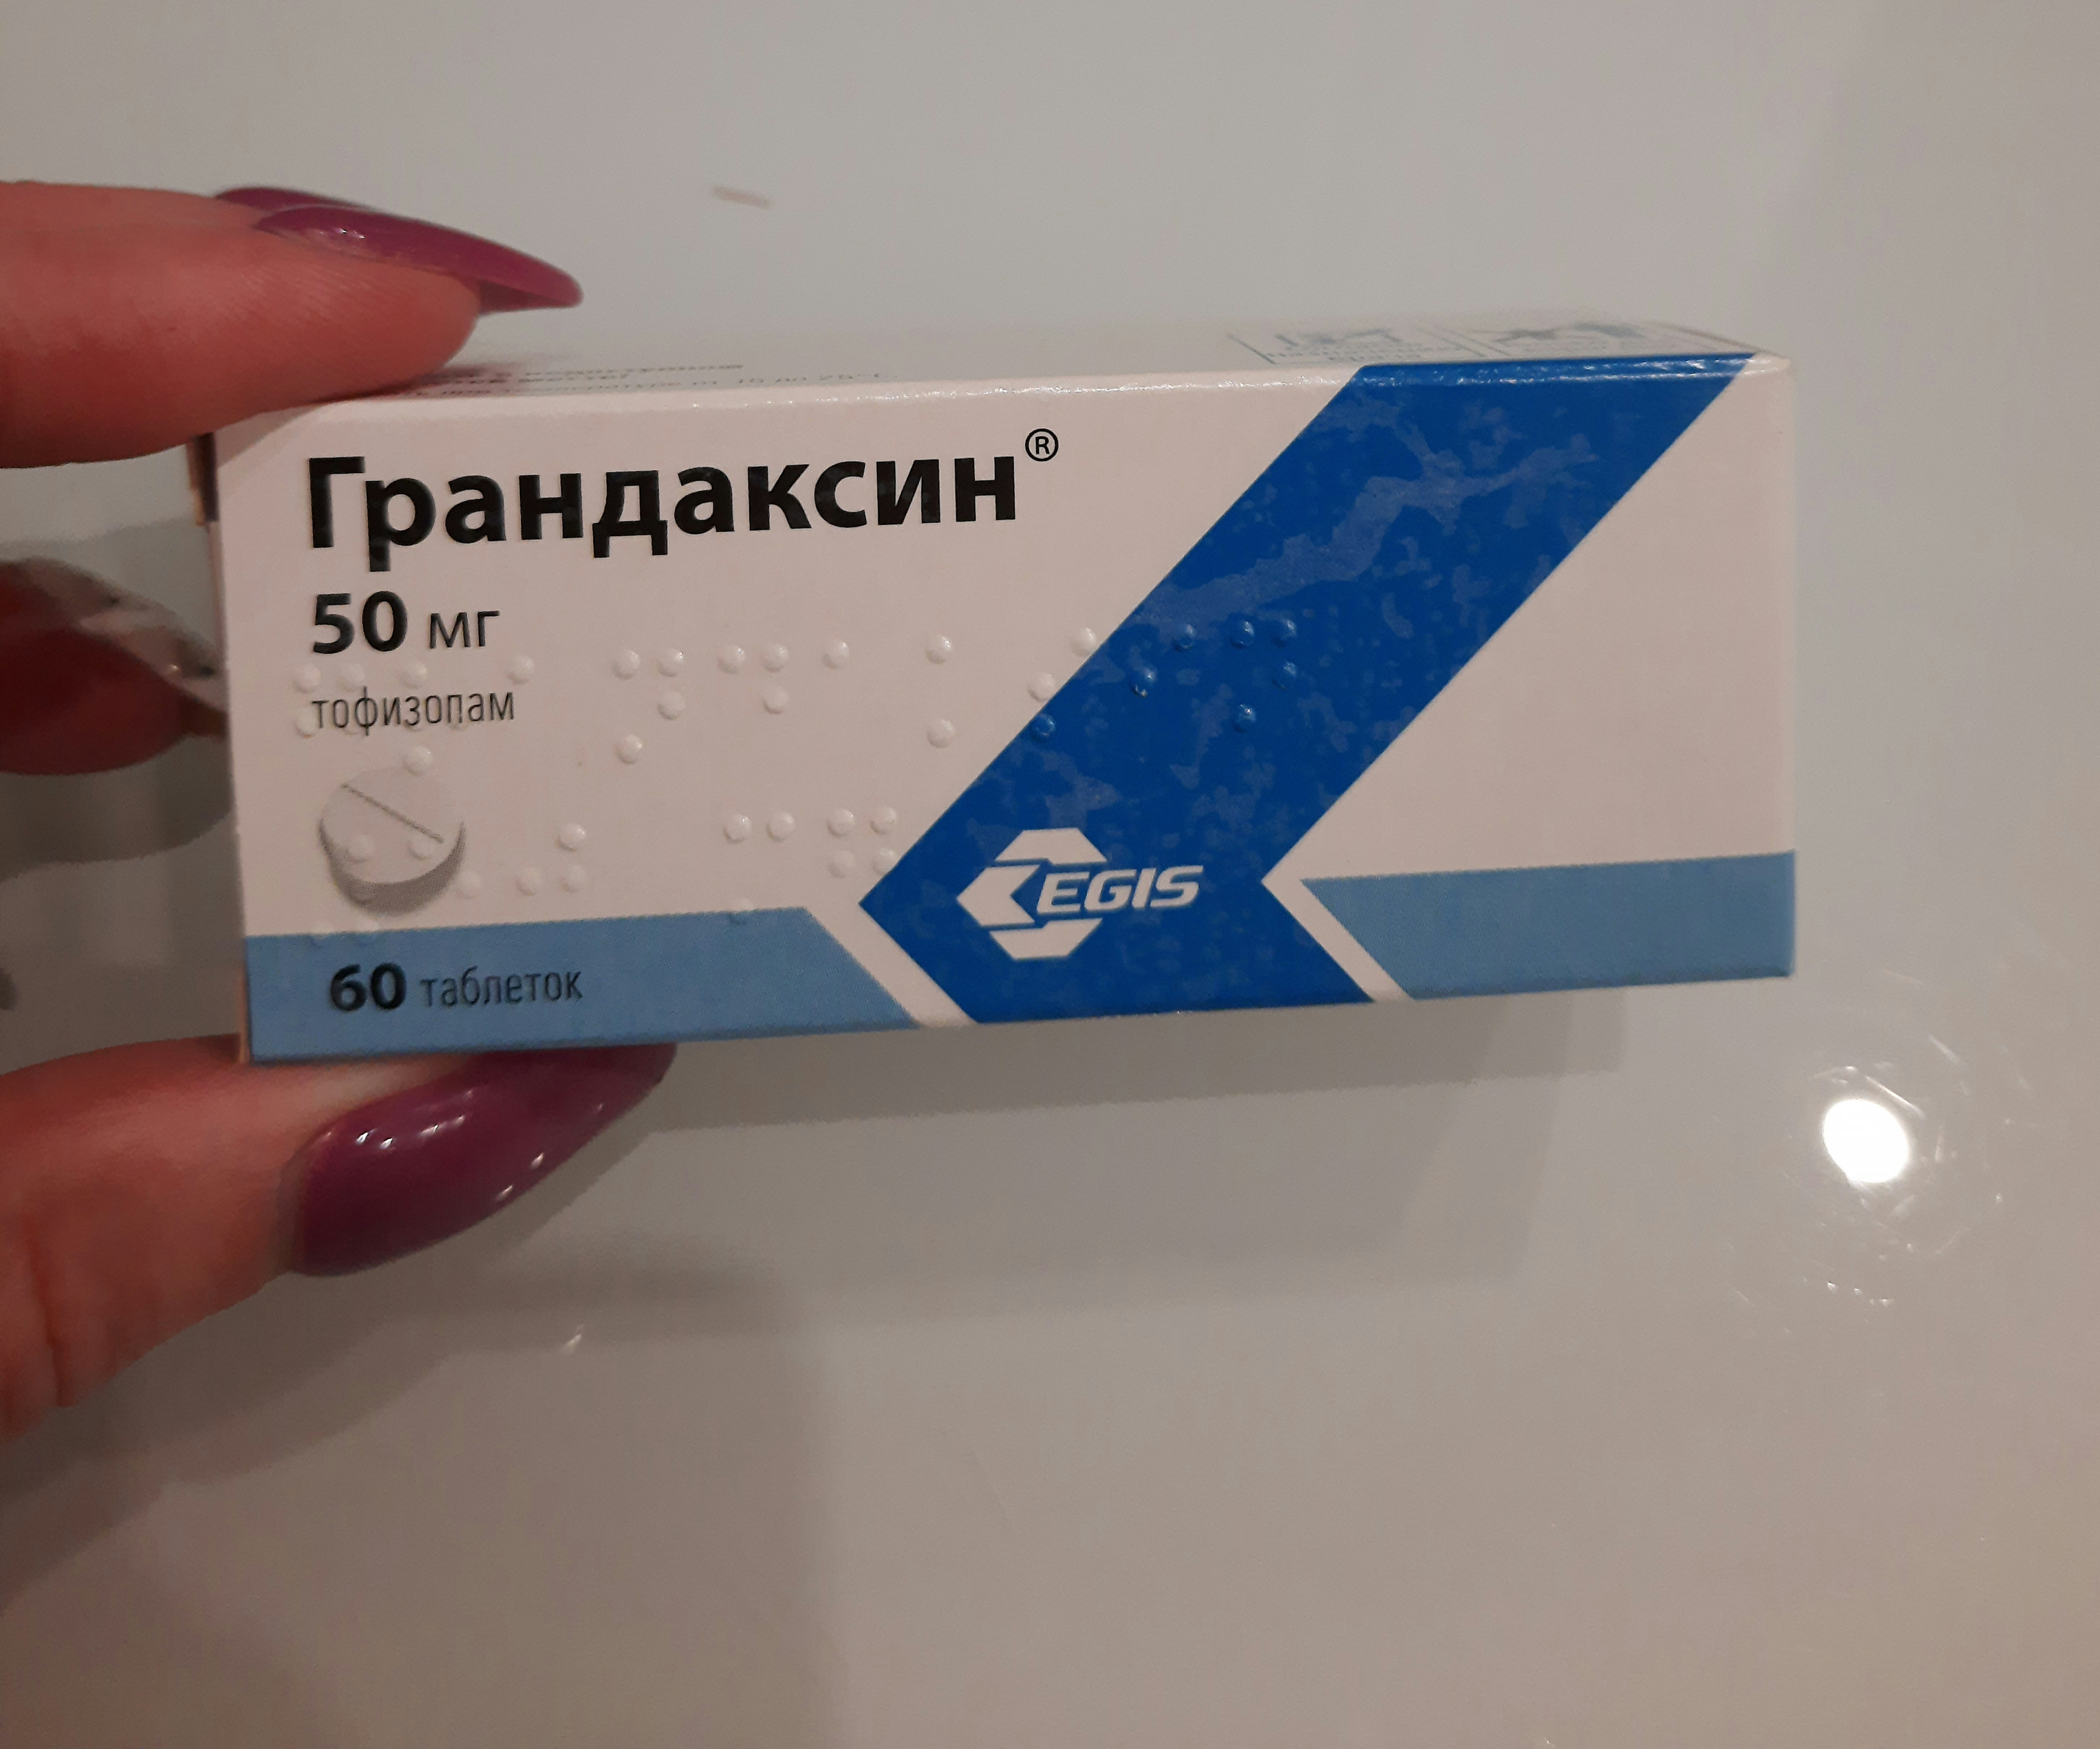 Грандаксин 50 мг. Грандаксин 60 шт. Грандаксин таб. 50мг №20.